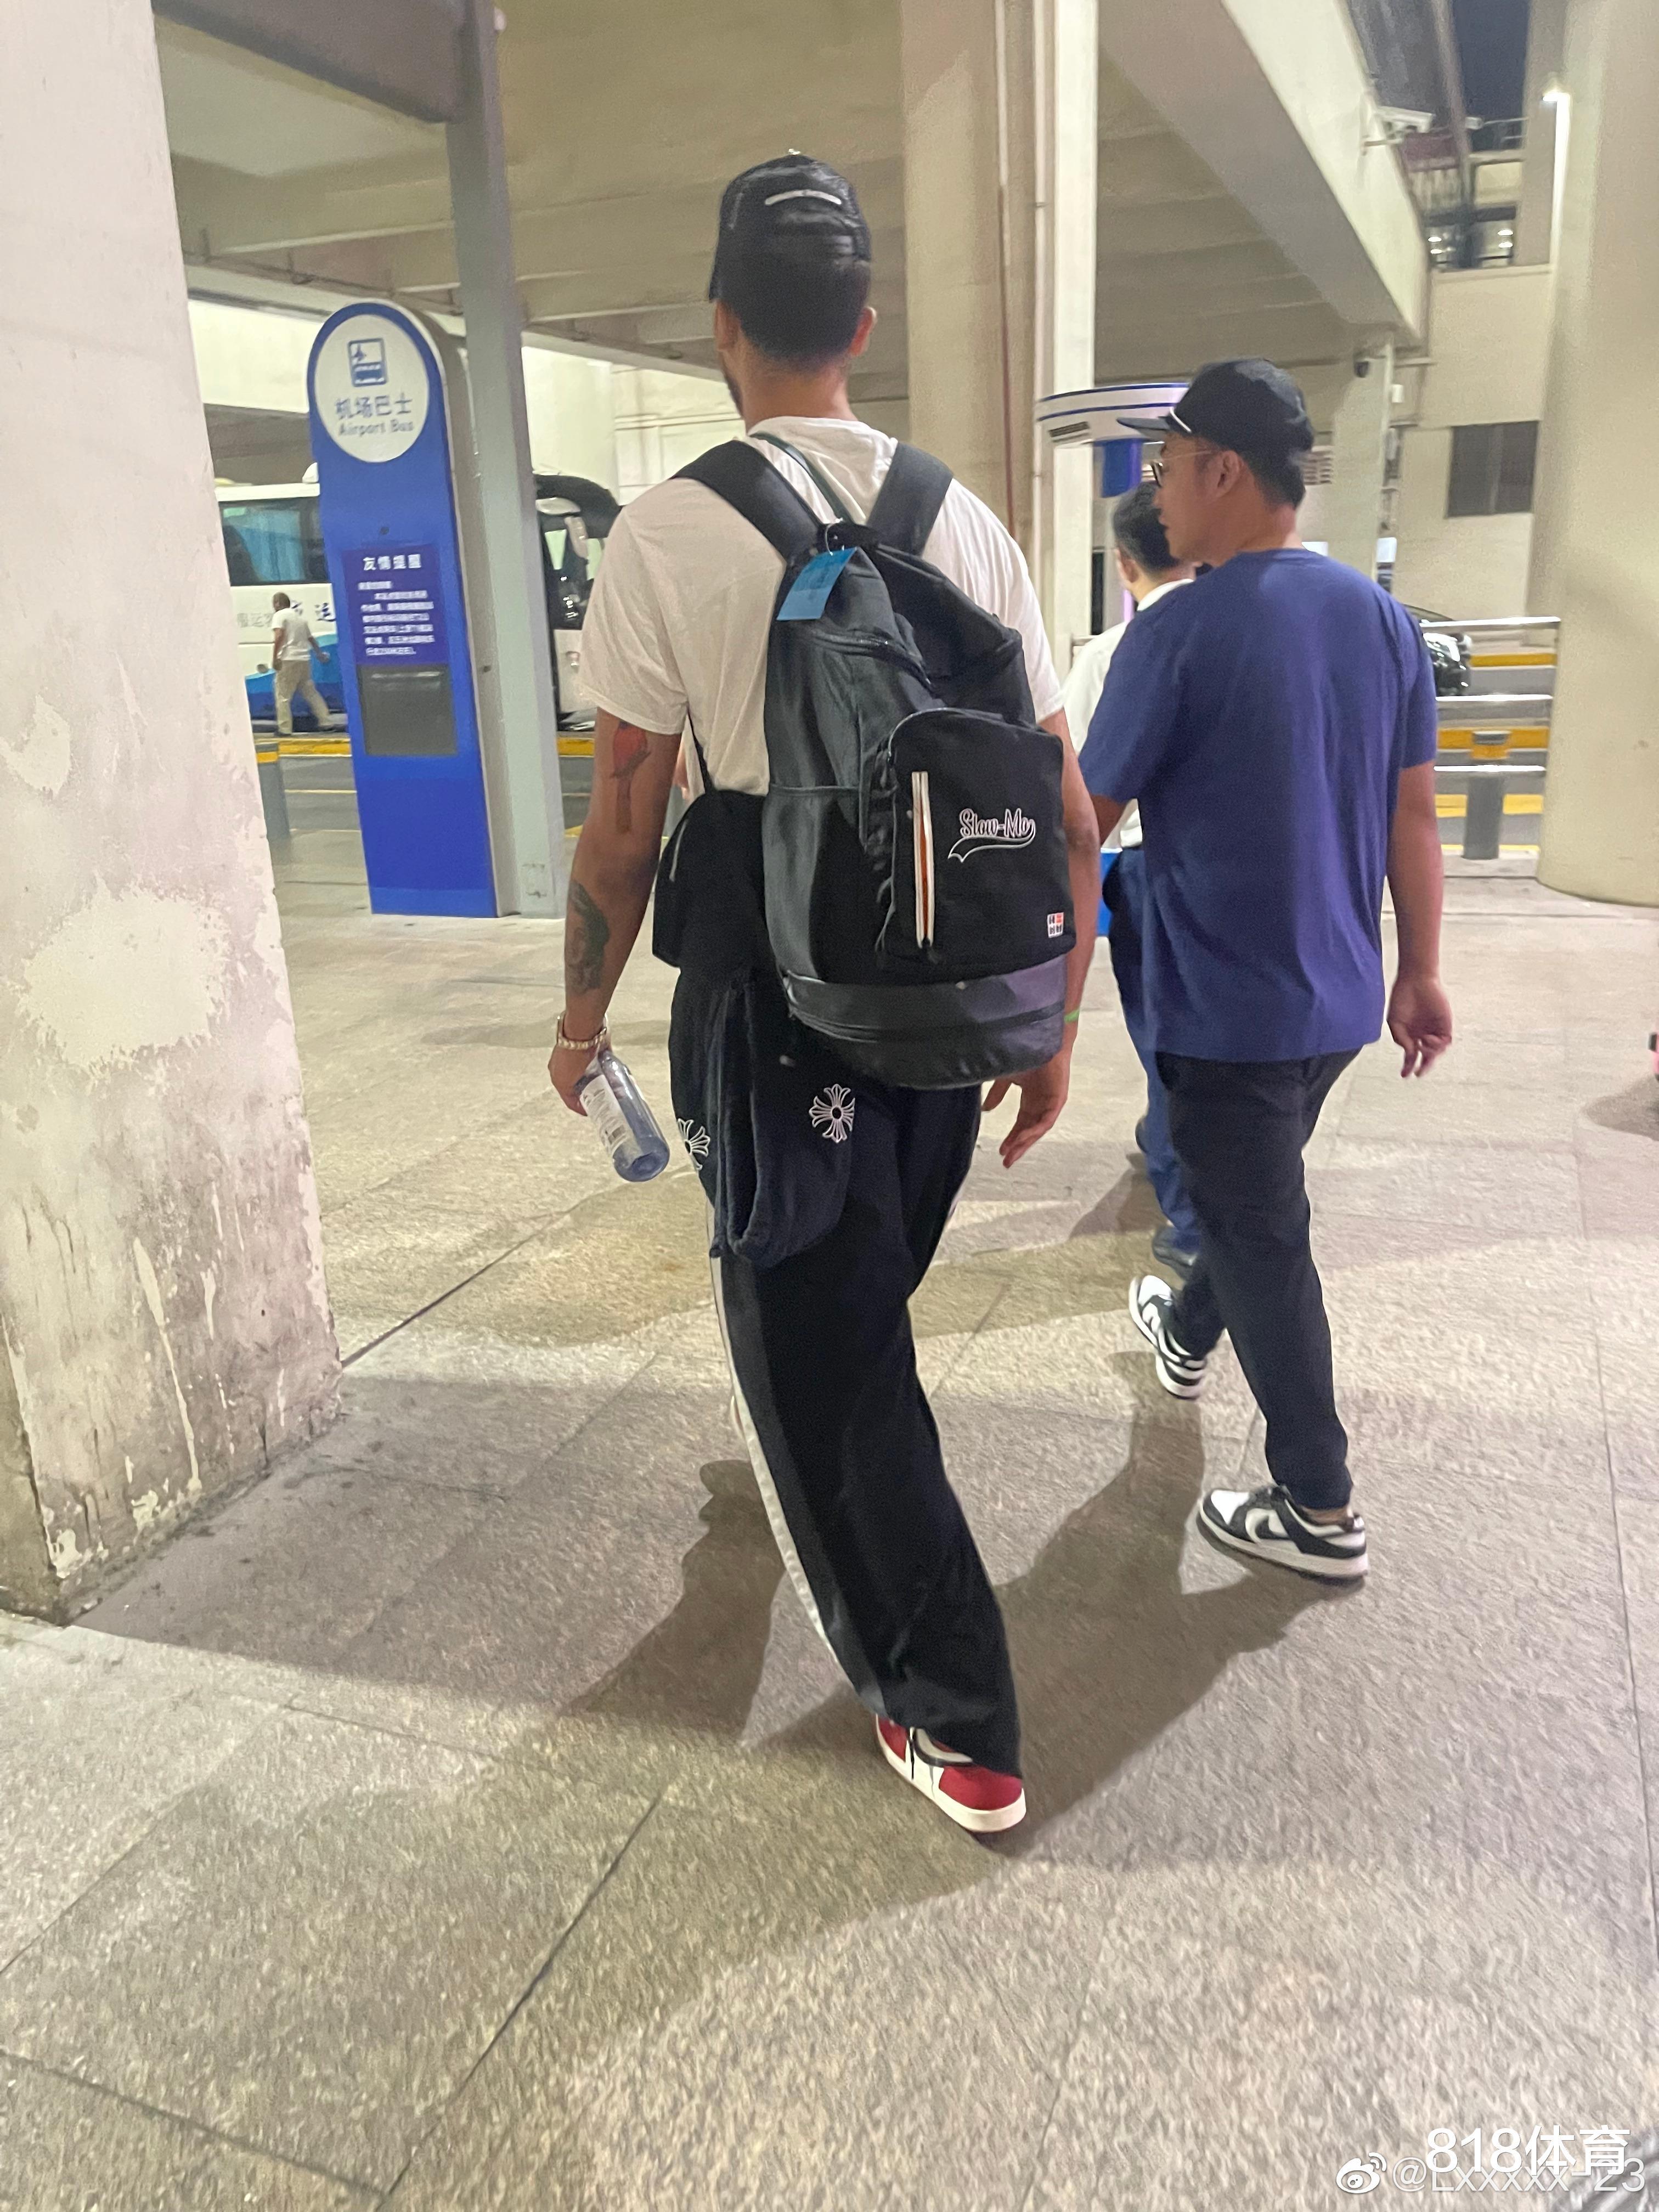 他来了! 李凯尔抵达上海浦东机场, 经纪人婉拒球迷签名要求迅速撤离(6)